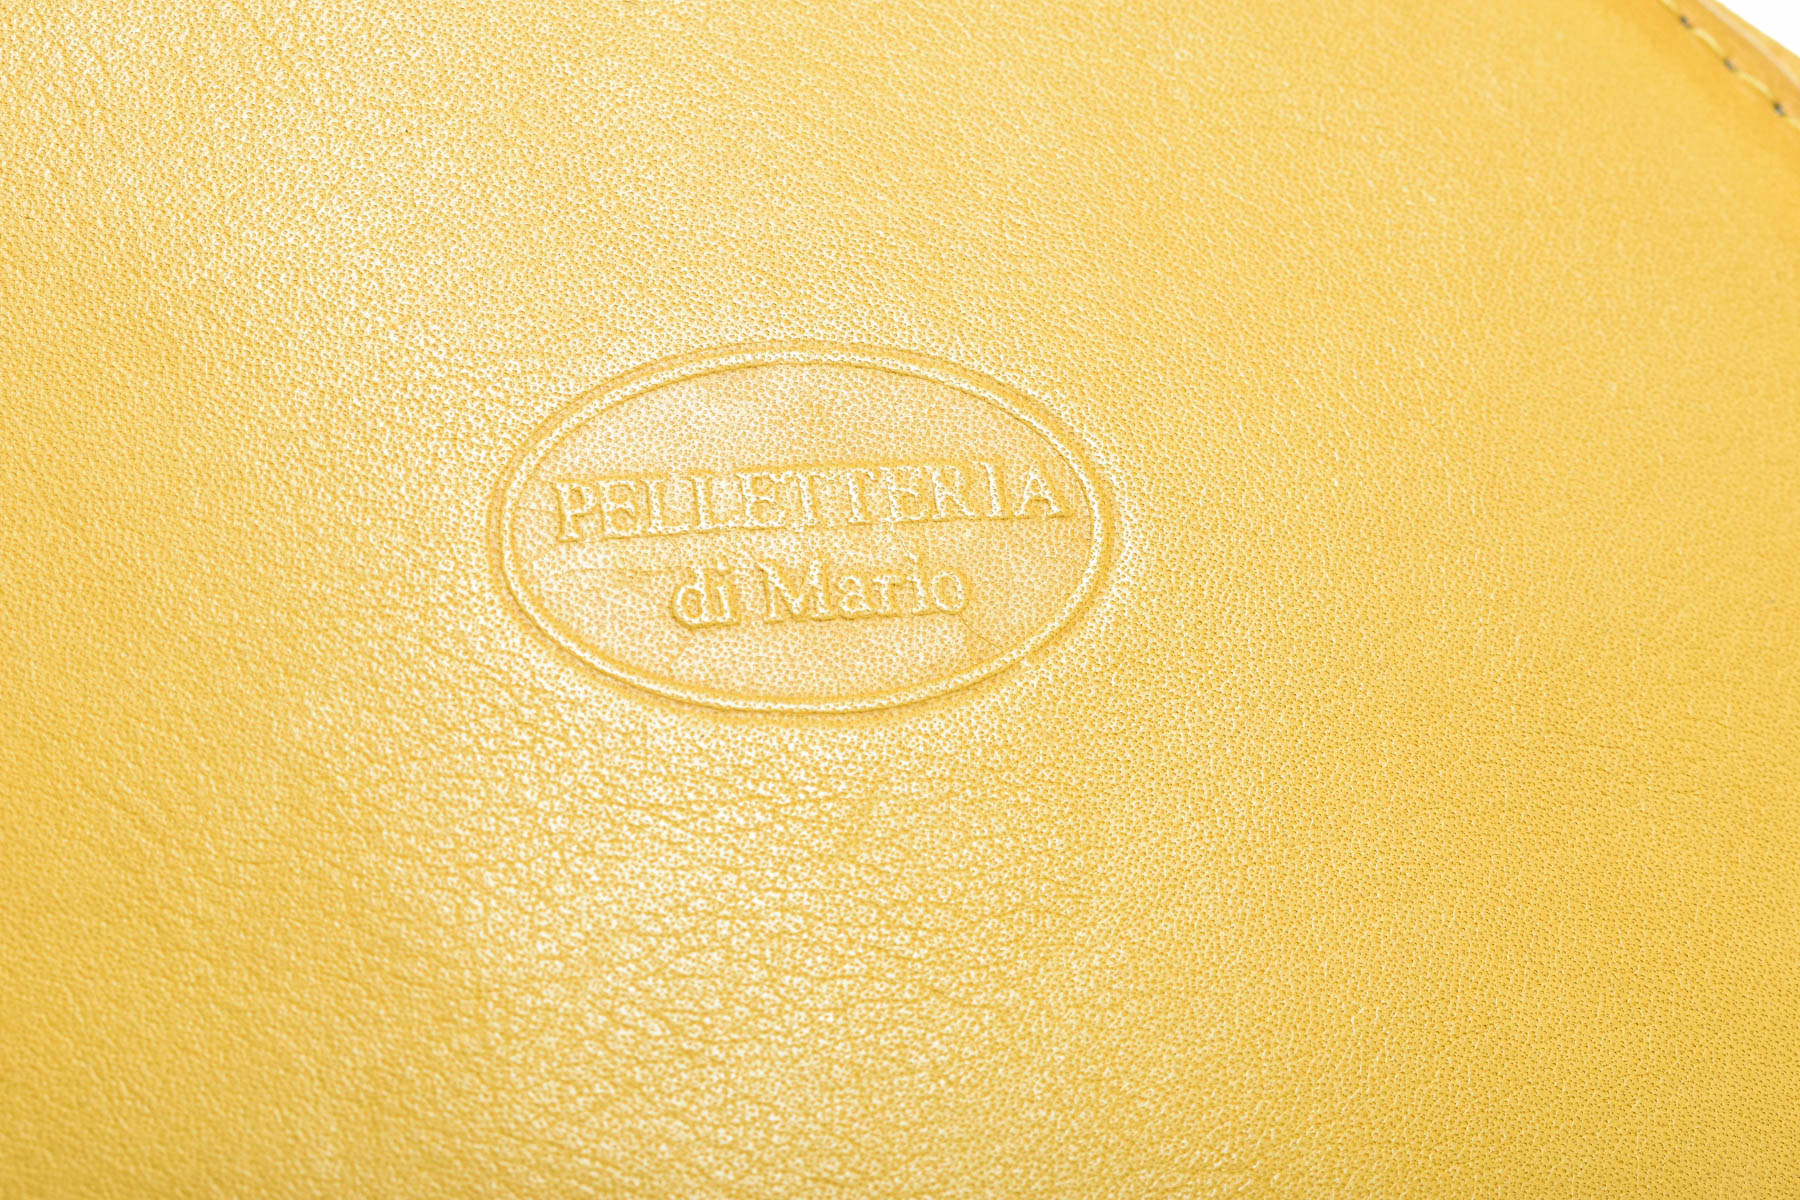 Дамска чанта - Pelletteria di mario - 3